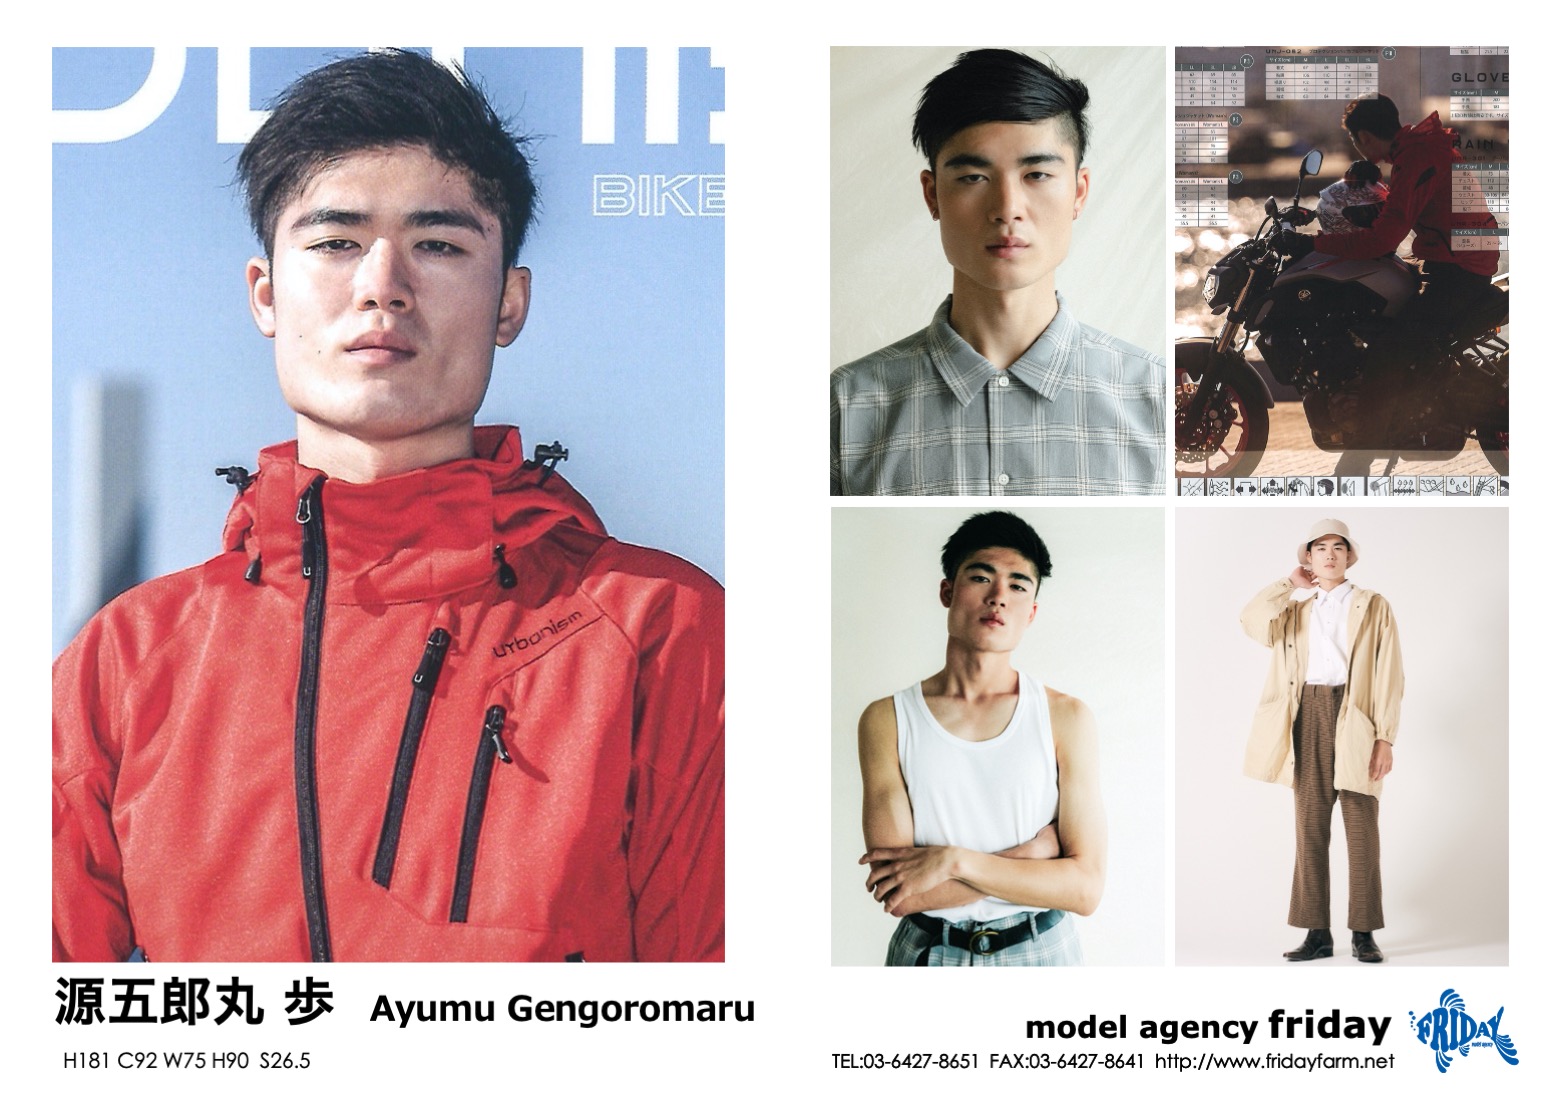 源五郎丸 歩 - Ayumu Gengoromaru | model agency friday